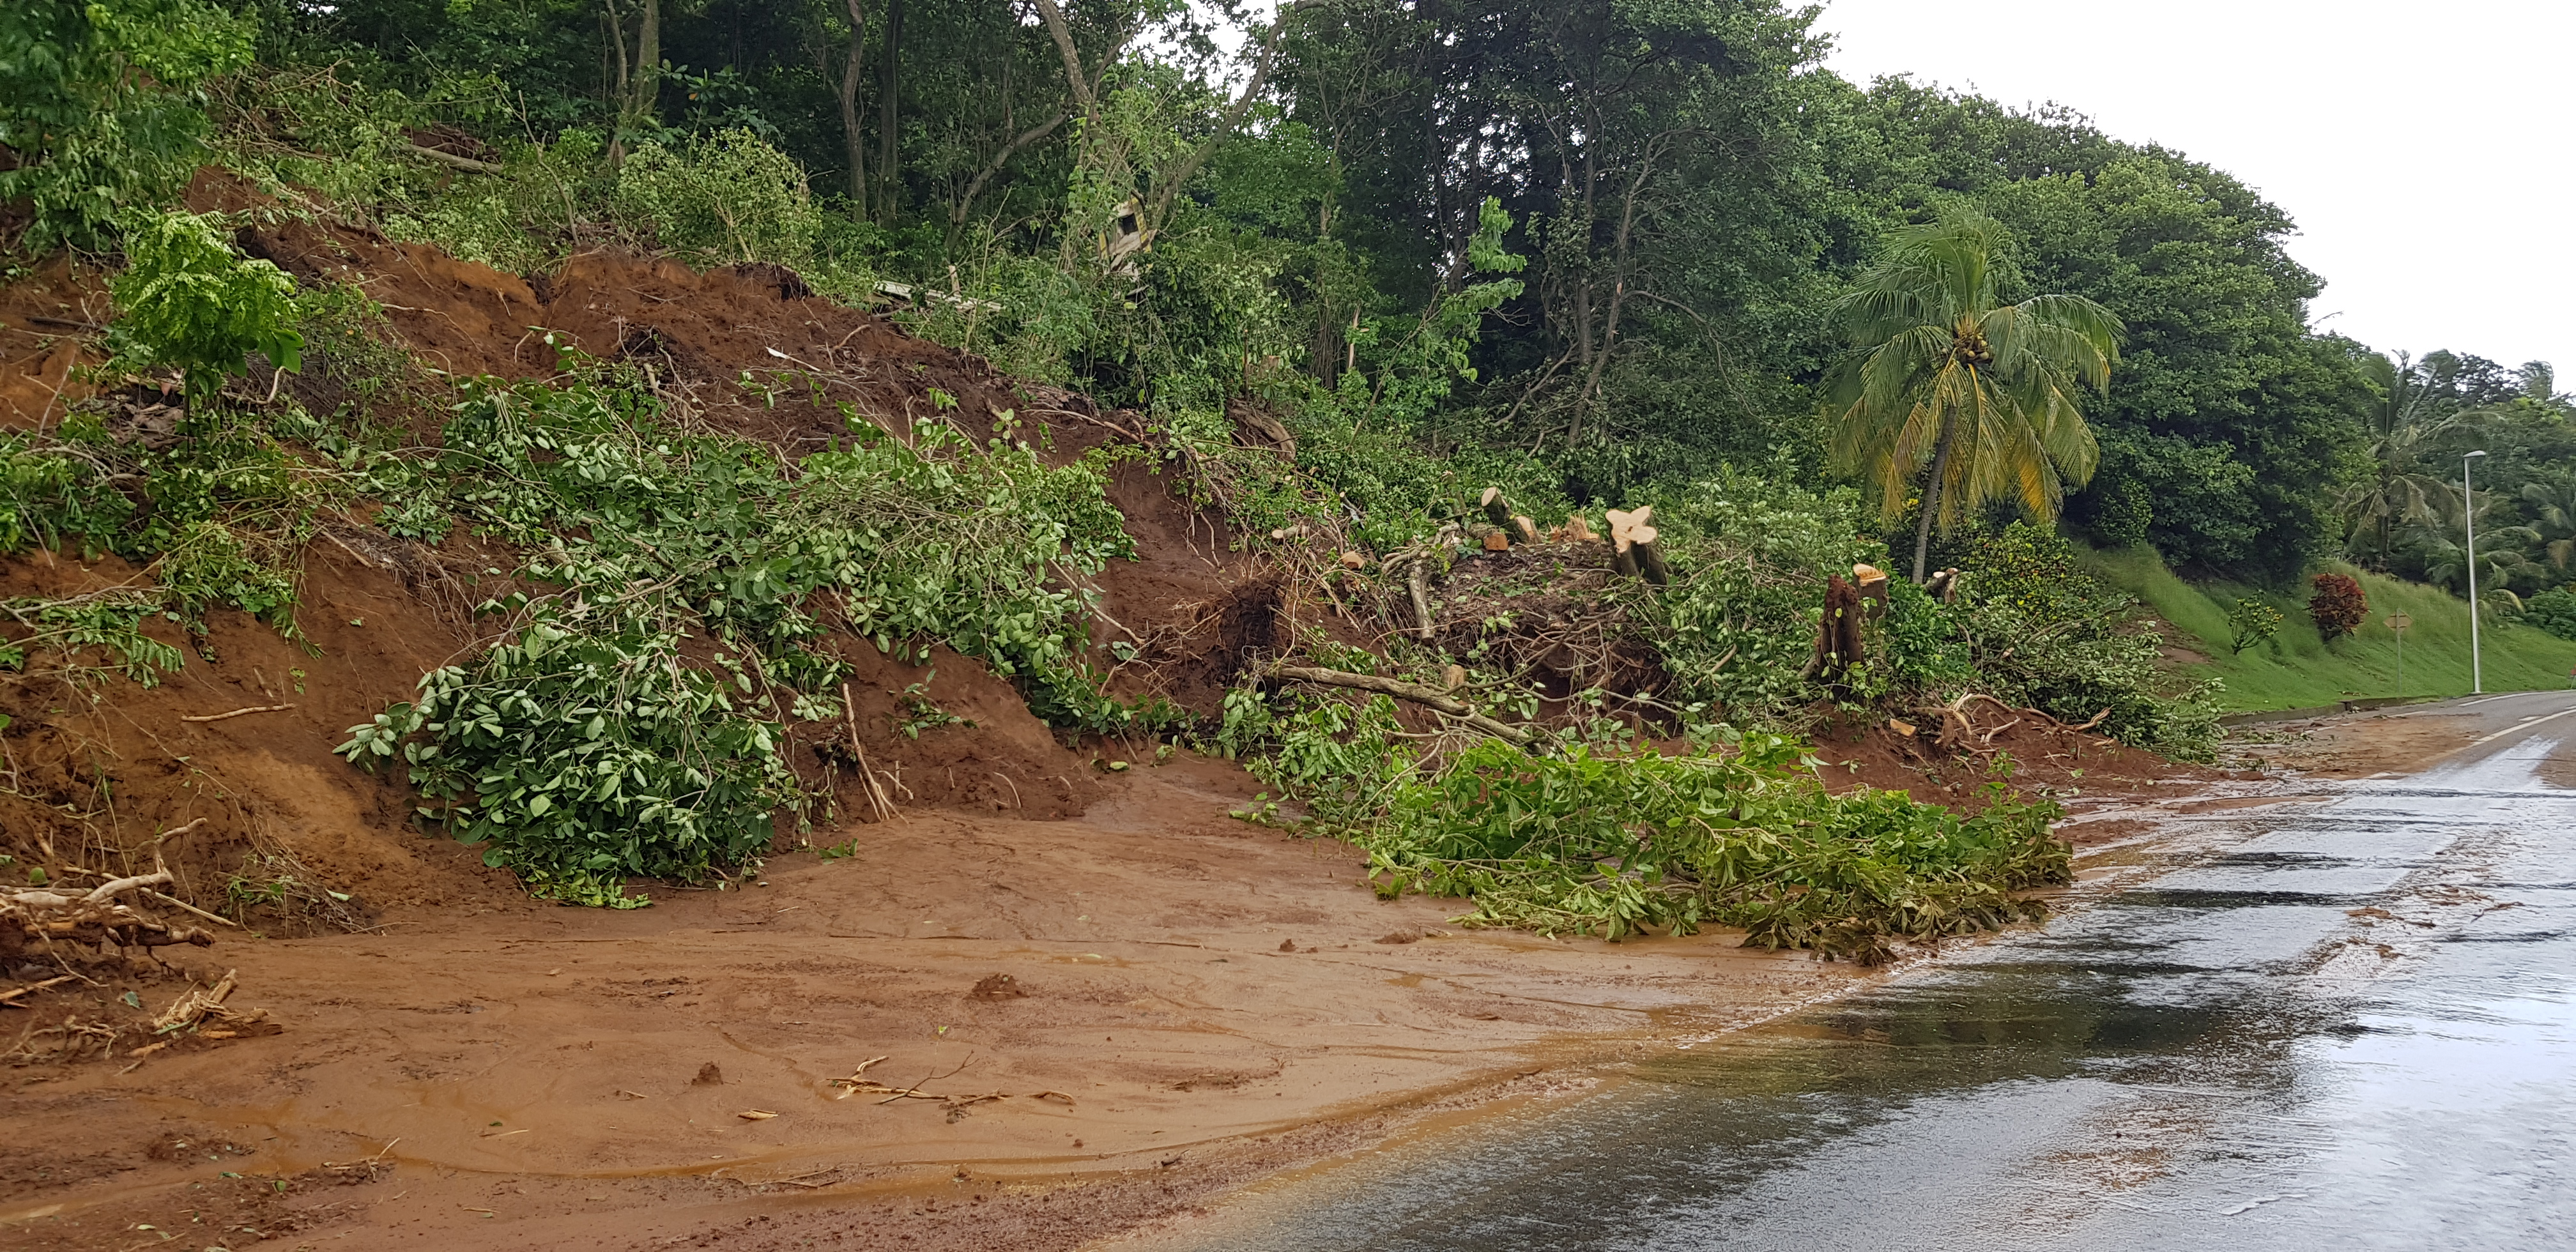     Cyclone Tammy : le point sur le réseau routier en Martinique ce dimanche soir

